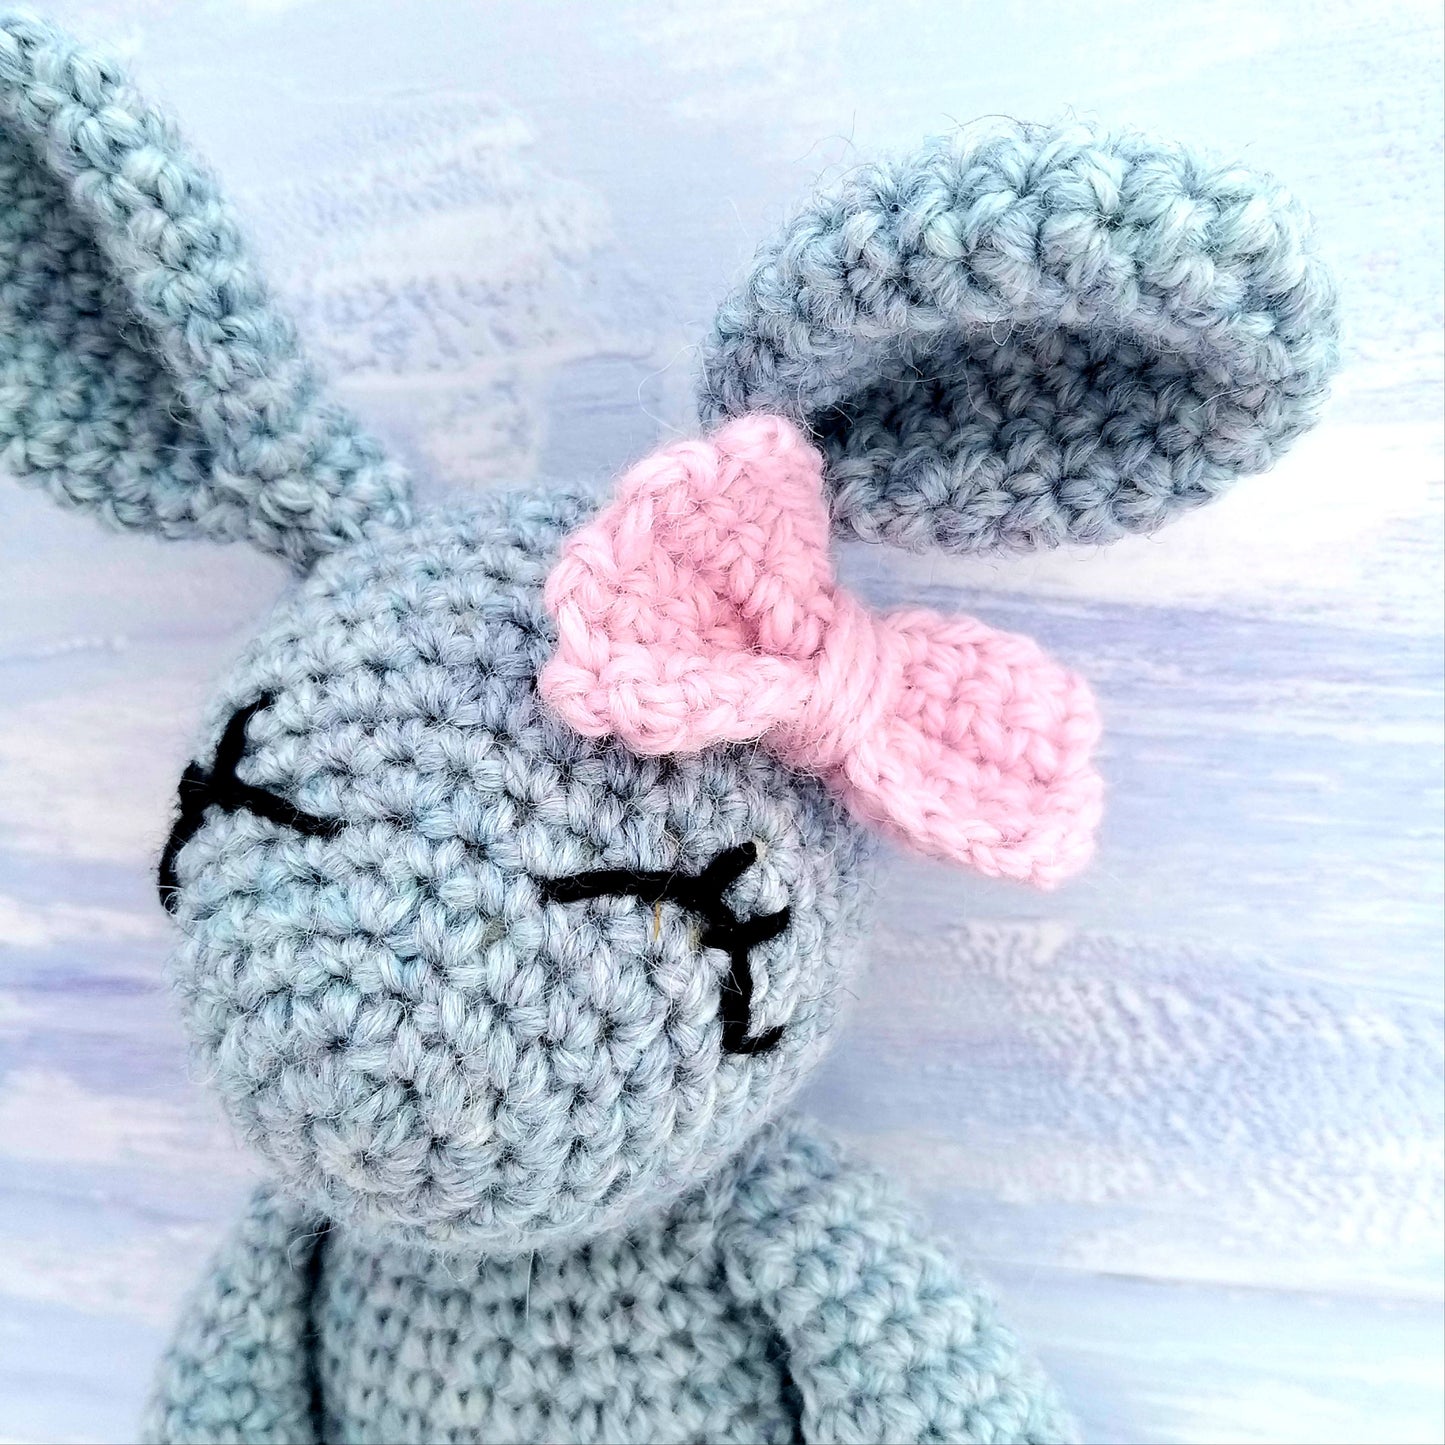 Alpaca Bunny Rabbit Crochet Kit - suitable for complete beginners